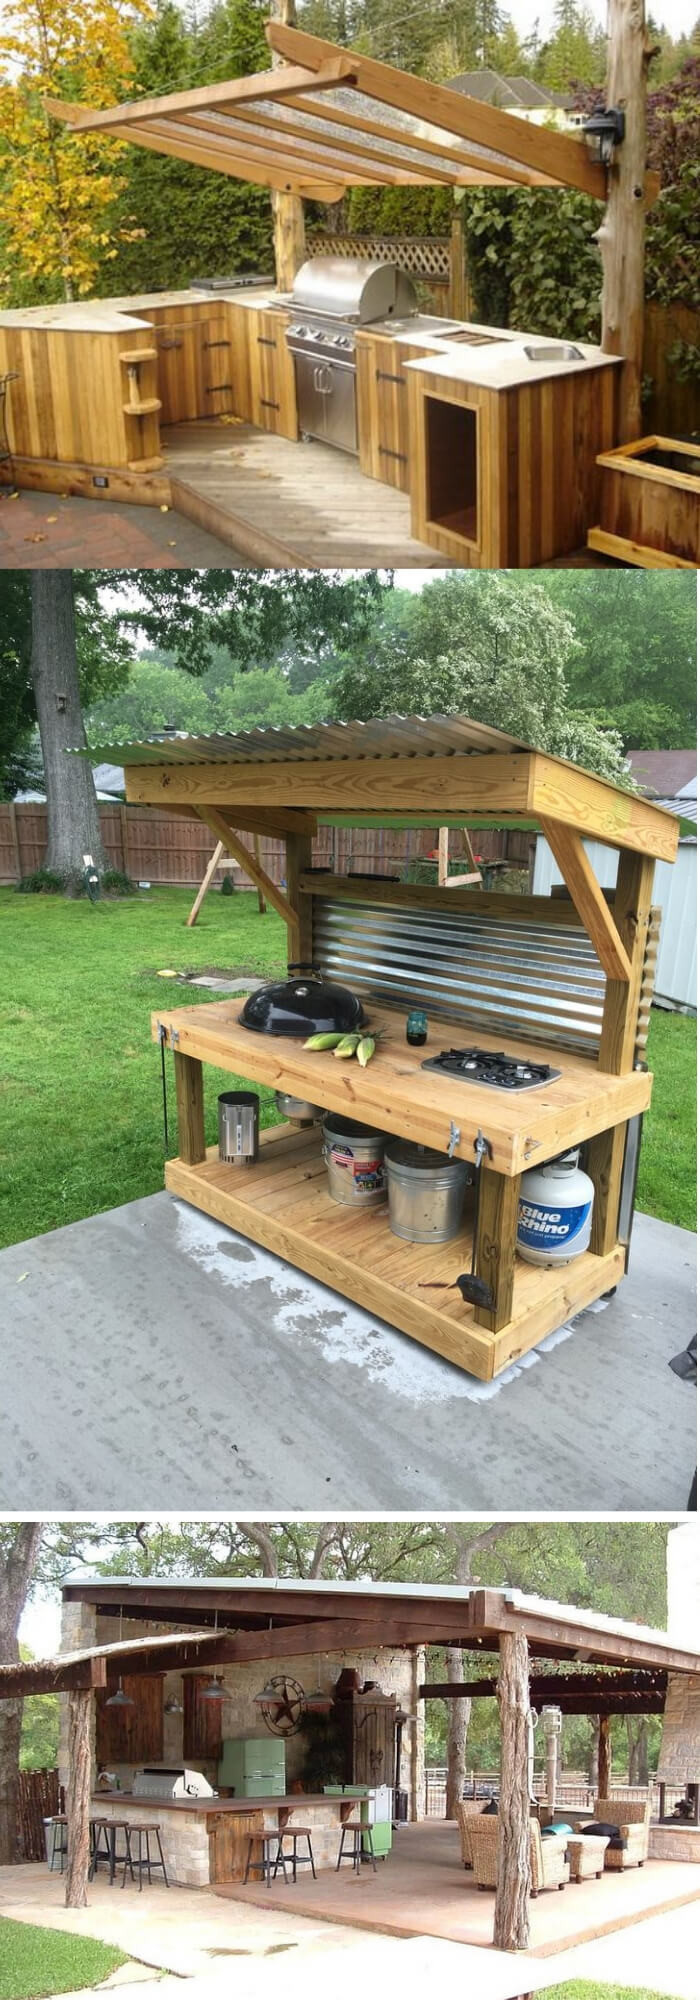 Outdoor Kitchen Plans DIY
 31 Stunning Outdoor Kitchen Ideas & Designs With